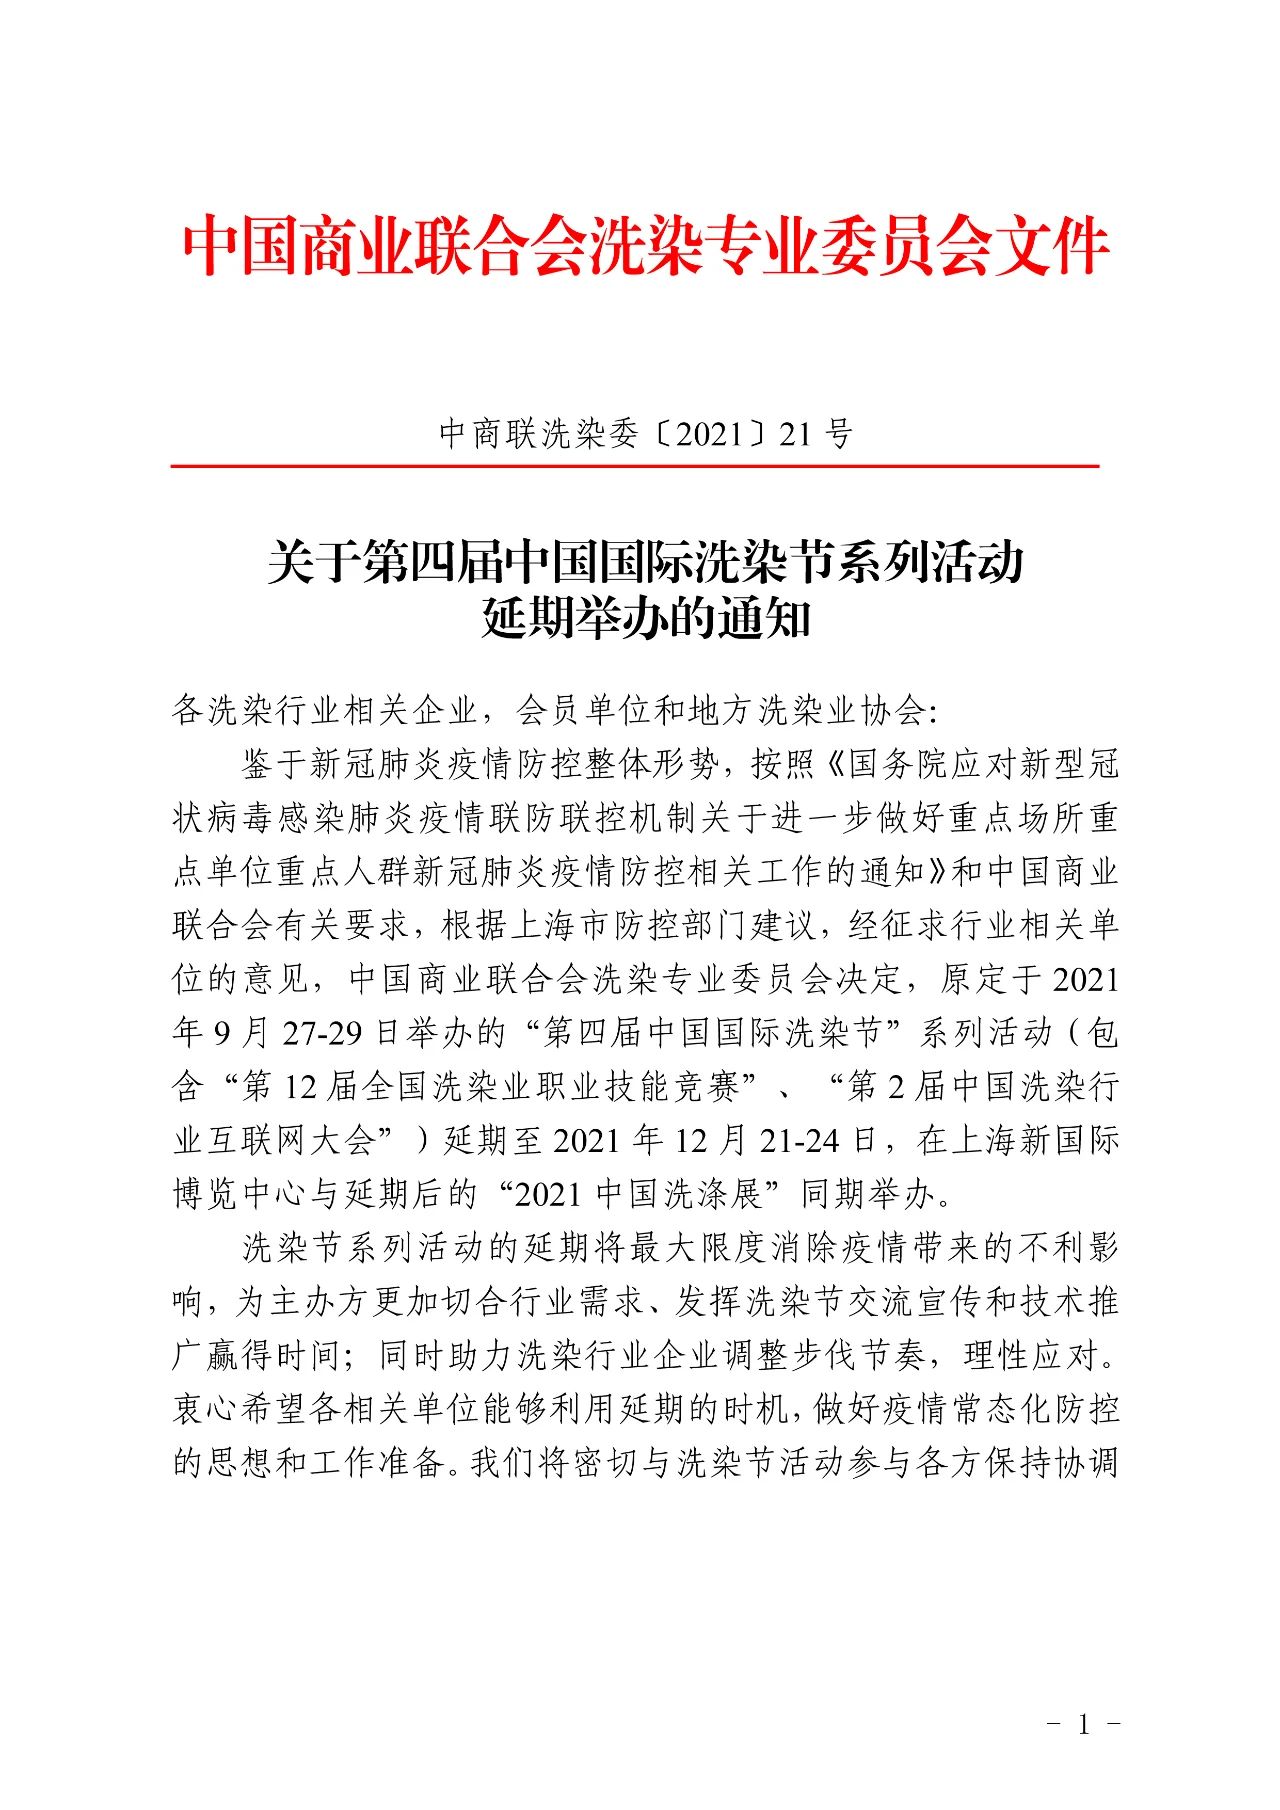 關于第四屆中國國際洗染節系列活動延期舉辦的通知